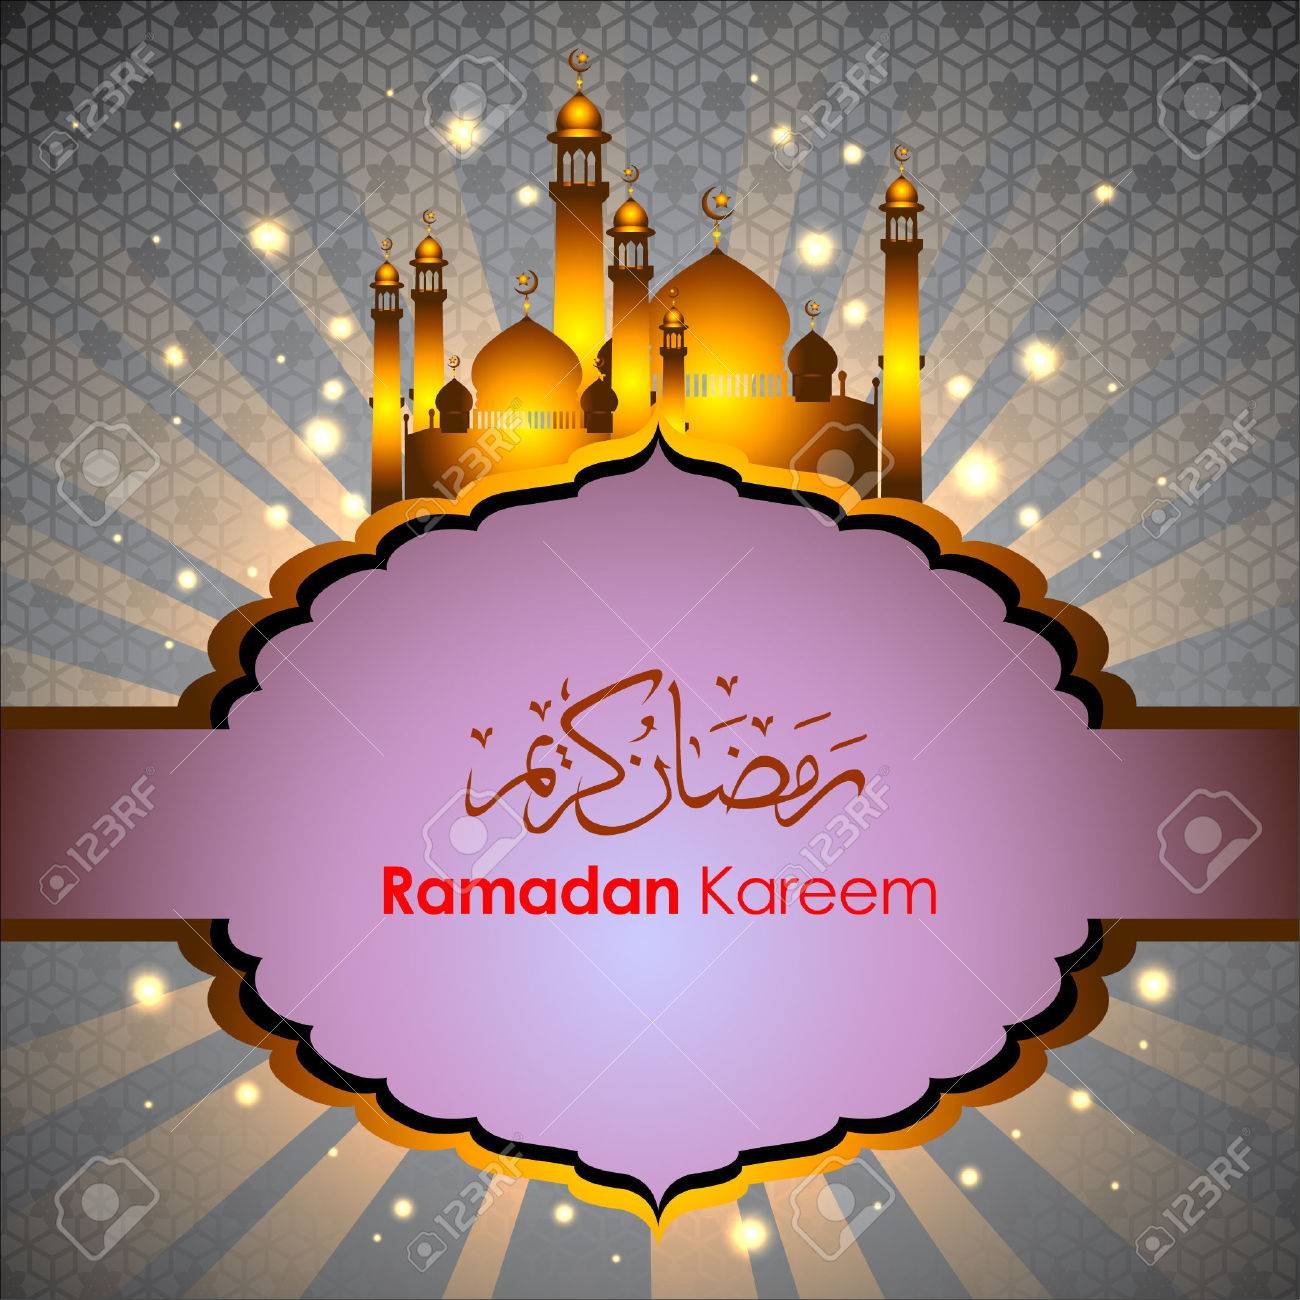 С началом рамадана на арабском. Поздравление с Рамаданом. Рамадан на арабском. Рамадан открытки. Месяц Рамадан на арабском.